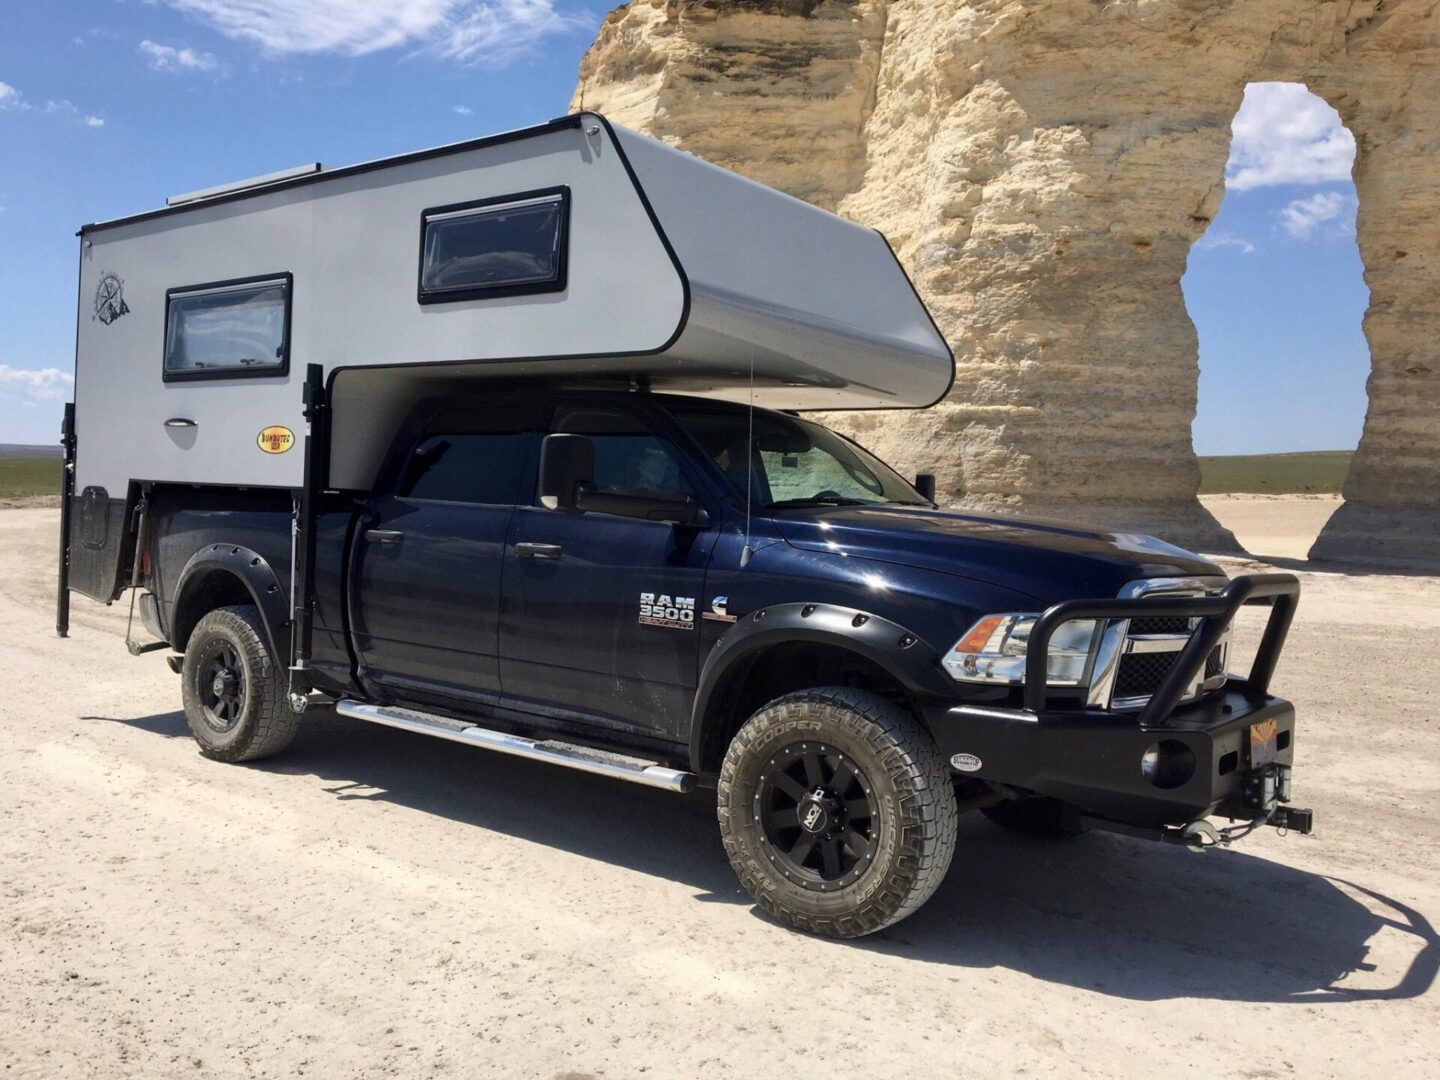 Bundutecs Roadrunner Pickup Truck Camper Feels Like Home Anywhere In The World 165171 1 